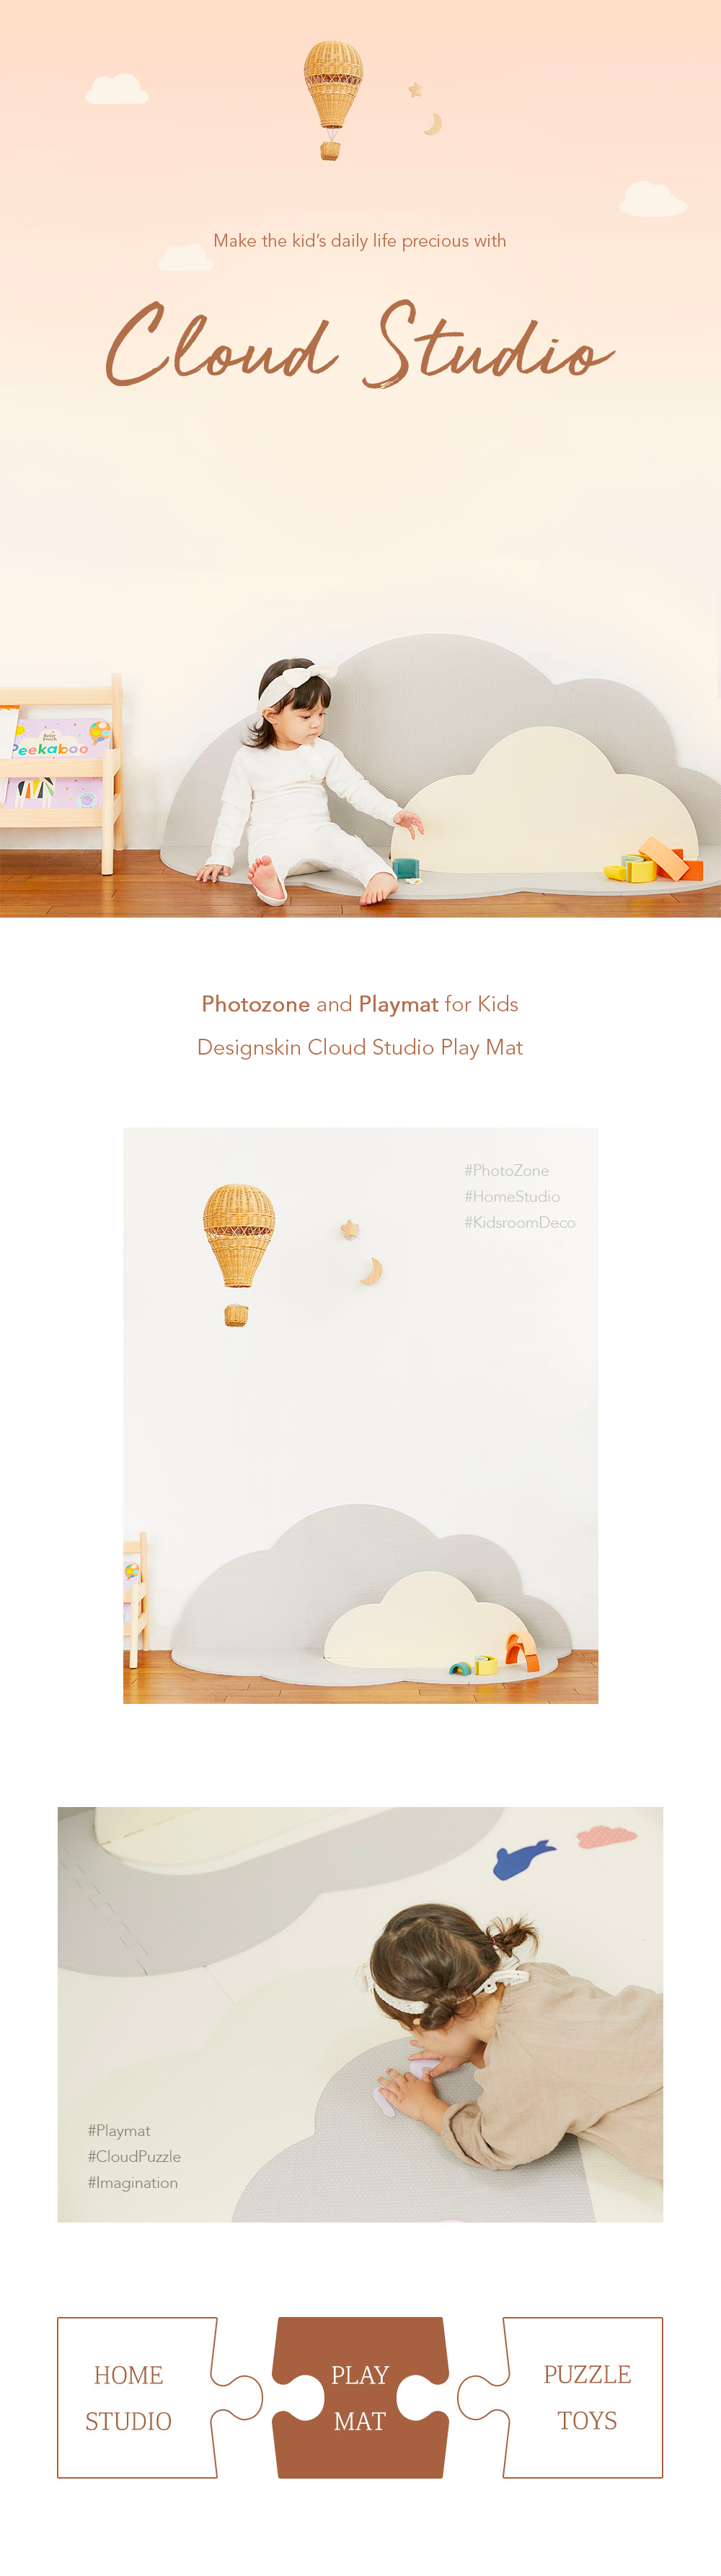 designskin cloud studio play mat